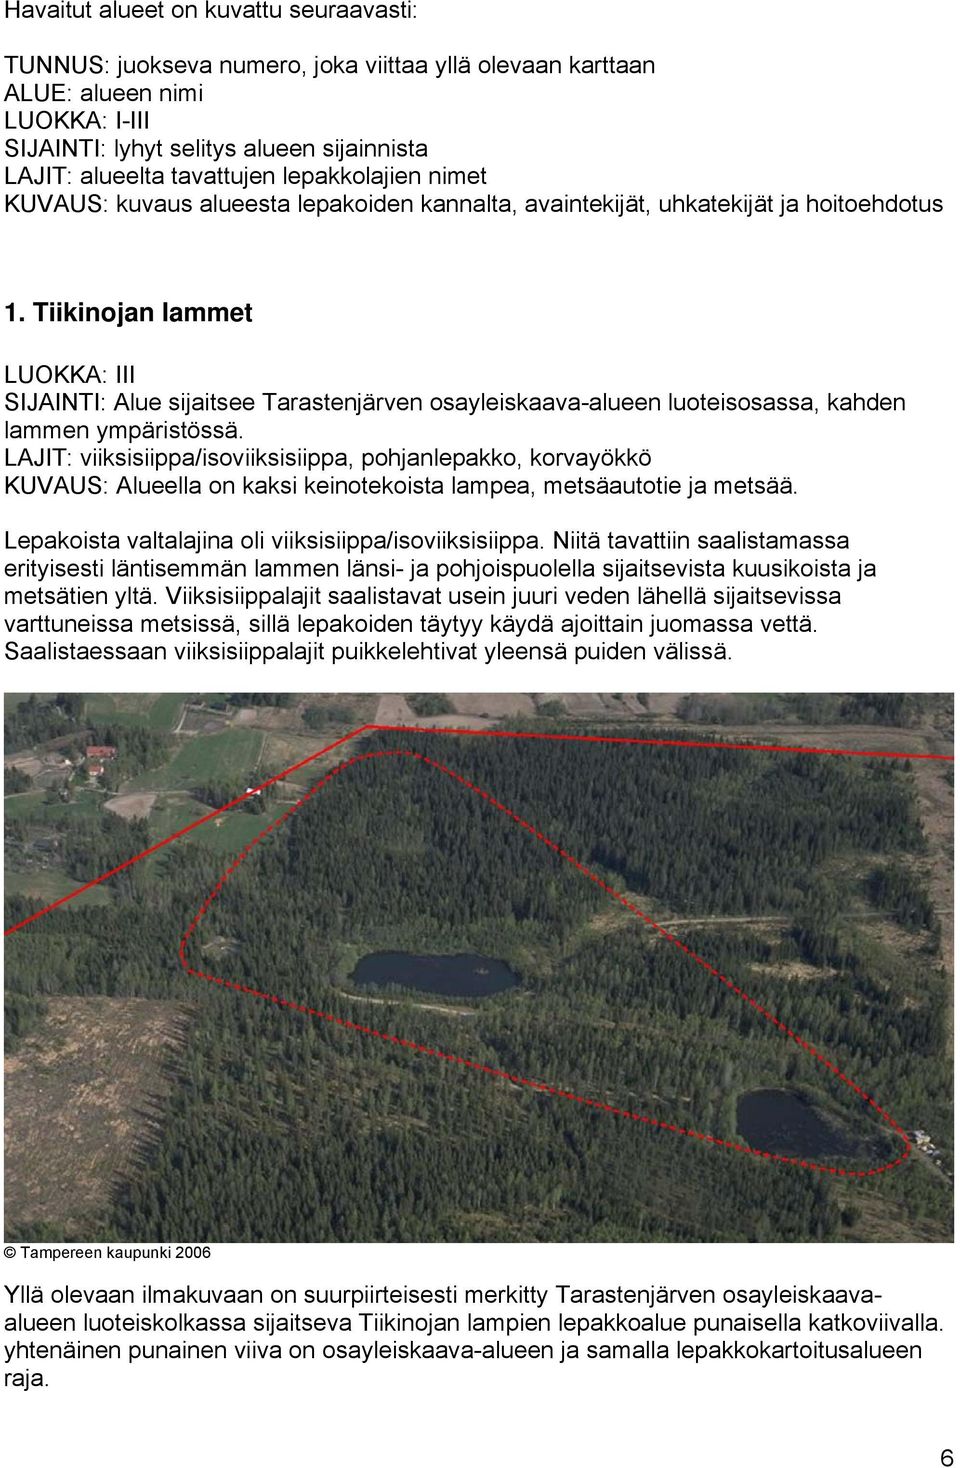 Tiikinojan lammet LUOKKA: III SIJAINTI: Alue sijaitsee Tarastenjärven osayleiskaava-alueen luoteisosassa, kahden lammen ympäristössä.